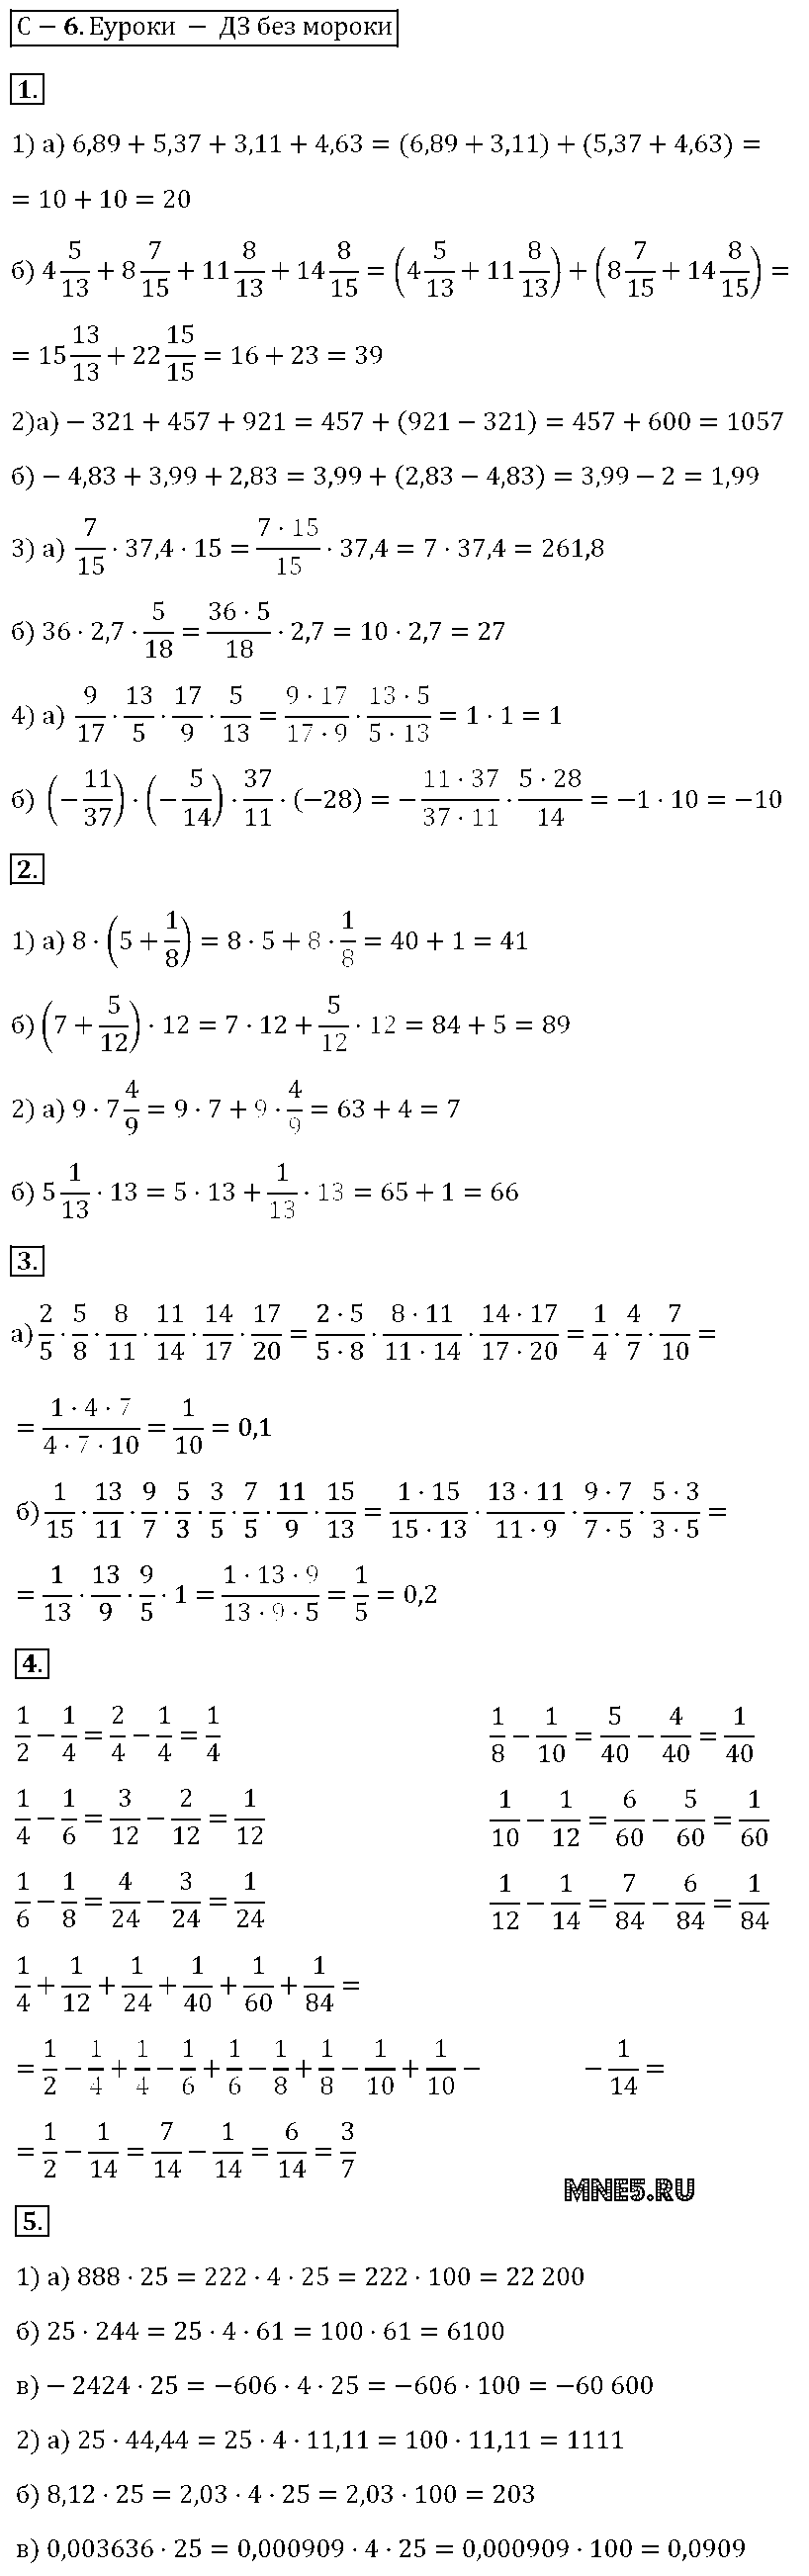 ГДЗ Алгебра 7 класс - С-6. Применений свойств действий над числами